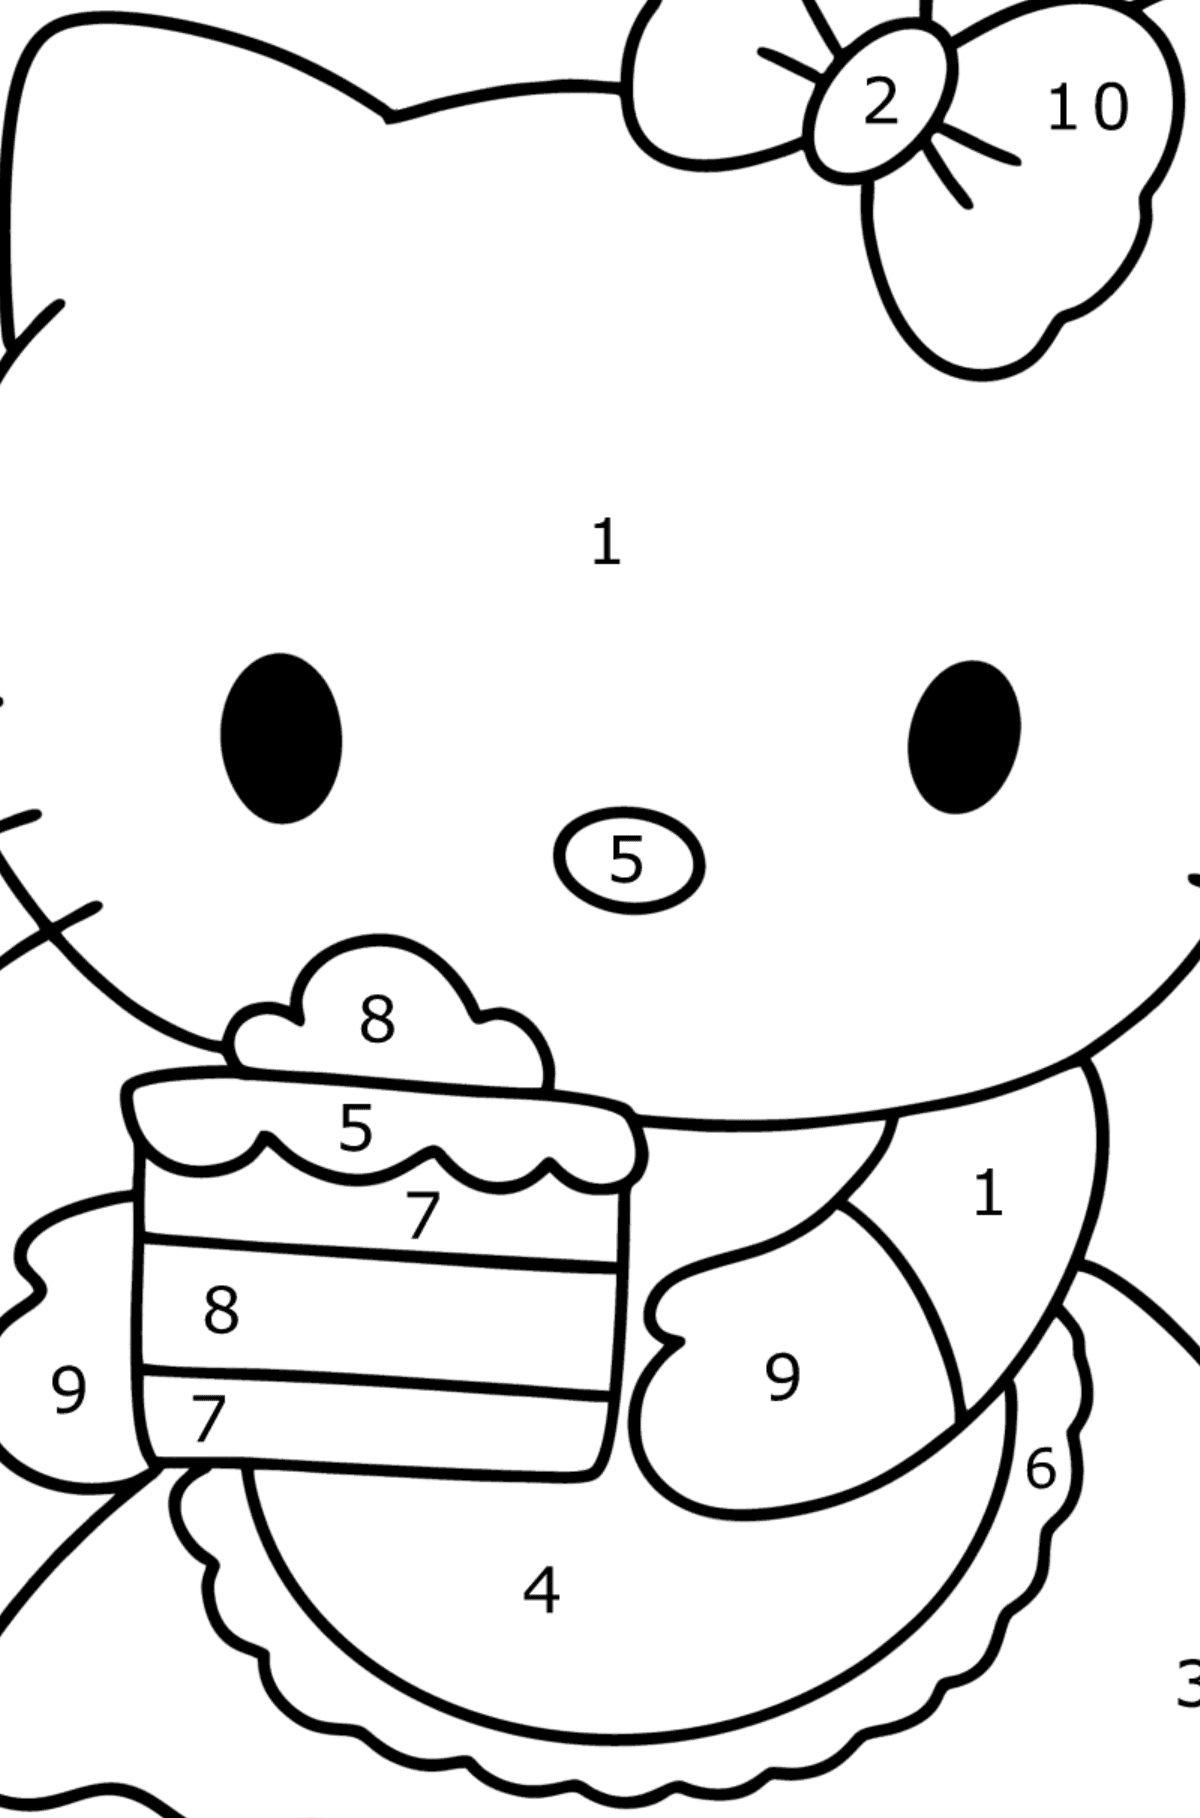 Boyama sayfası Hello Kitty ve pasta - Sayılarla Boyama çocuklar için